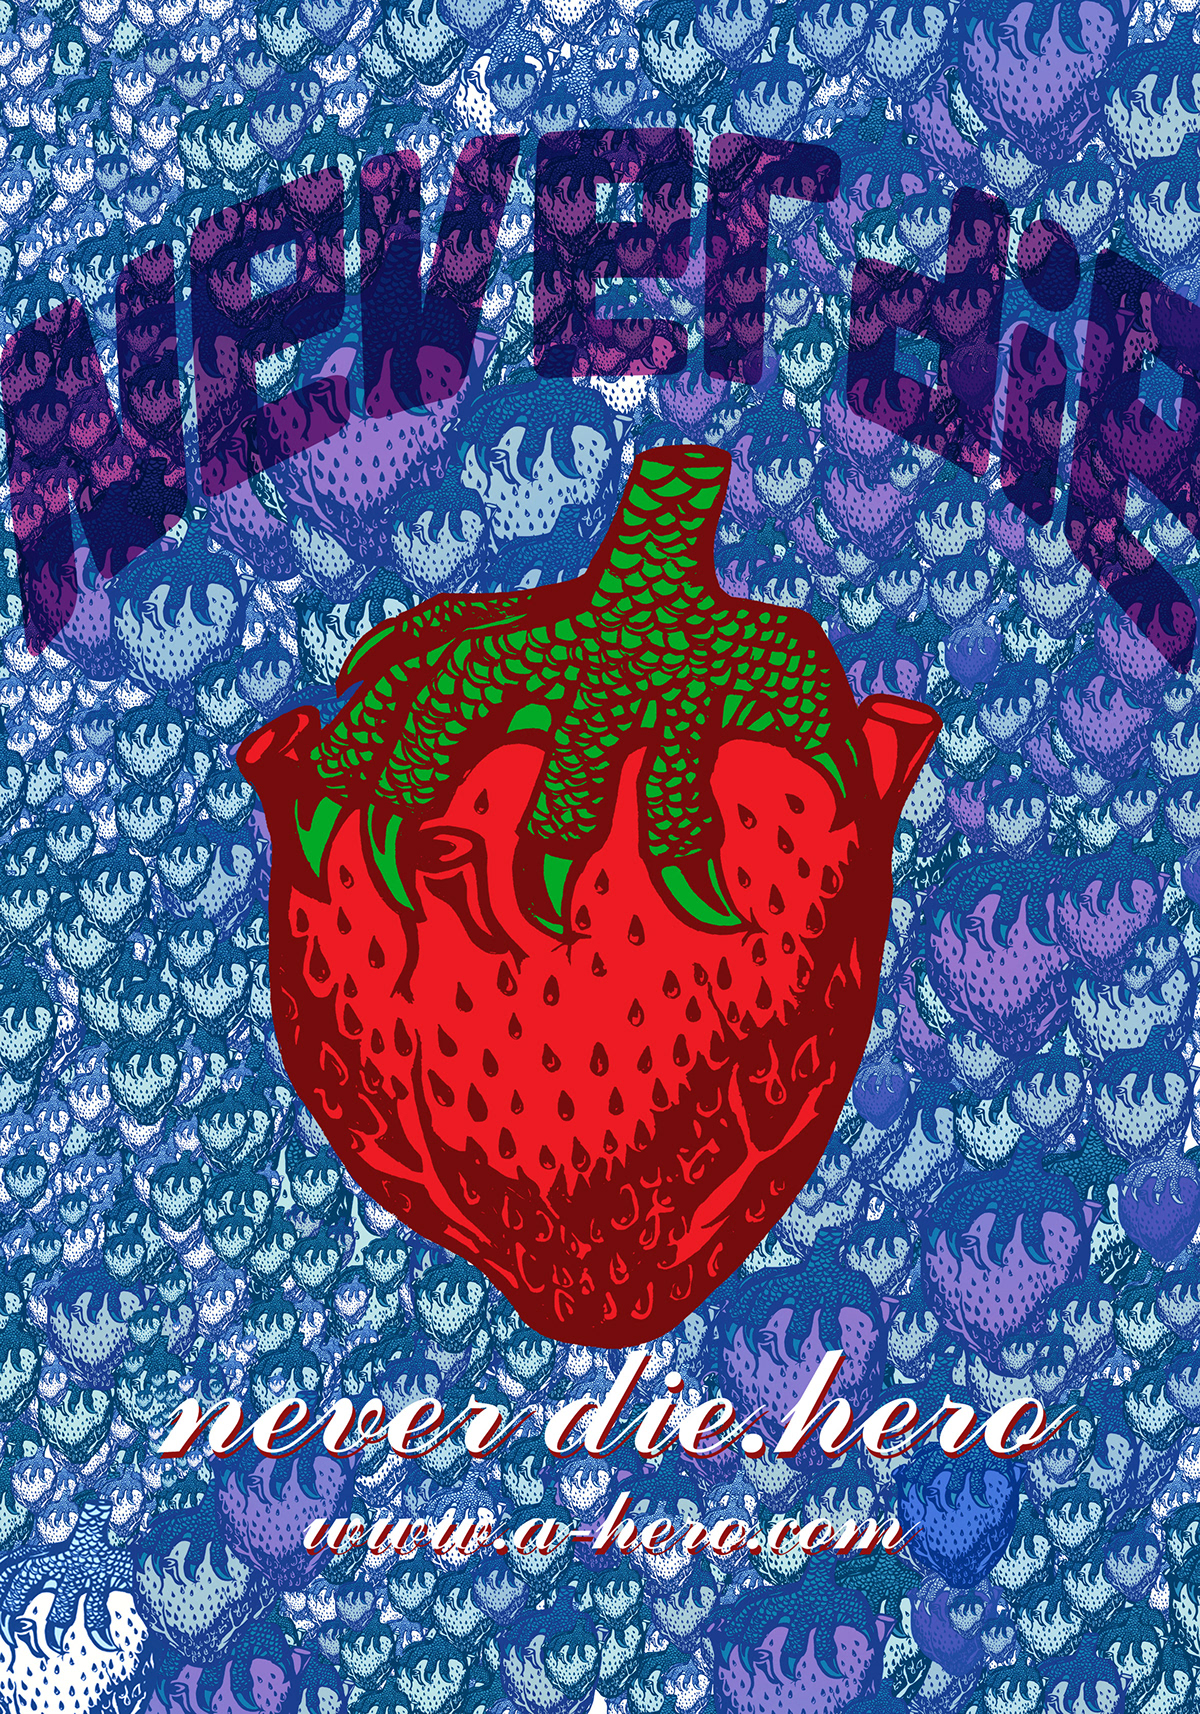 neverdiehero! tee t-shirt graphic design art